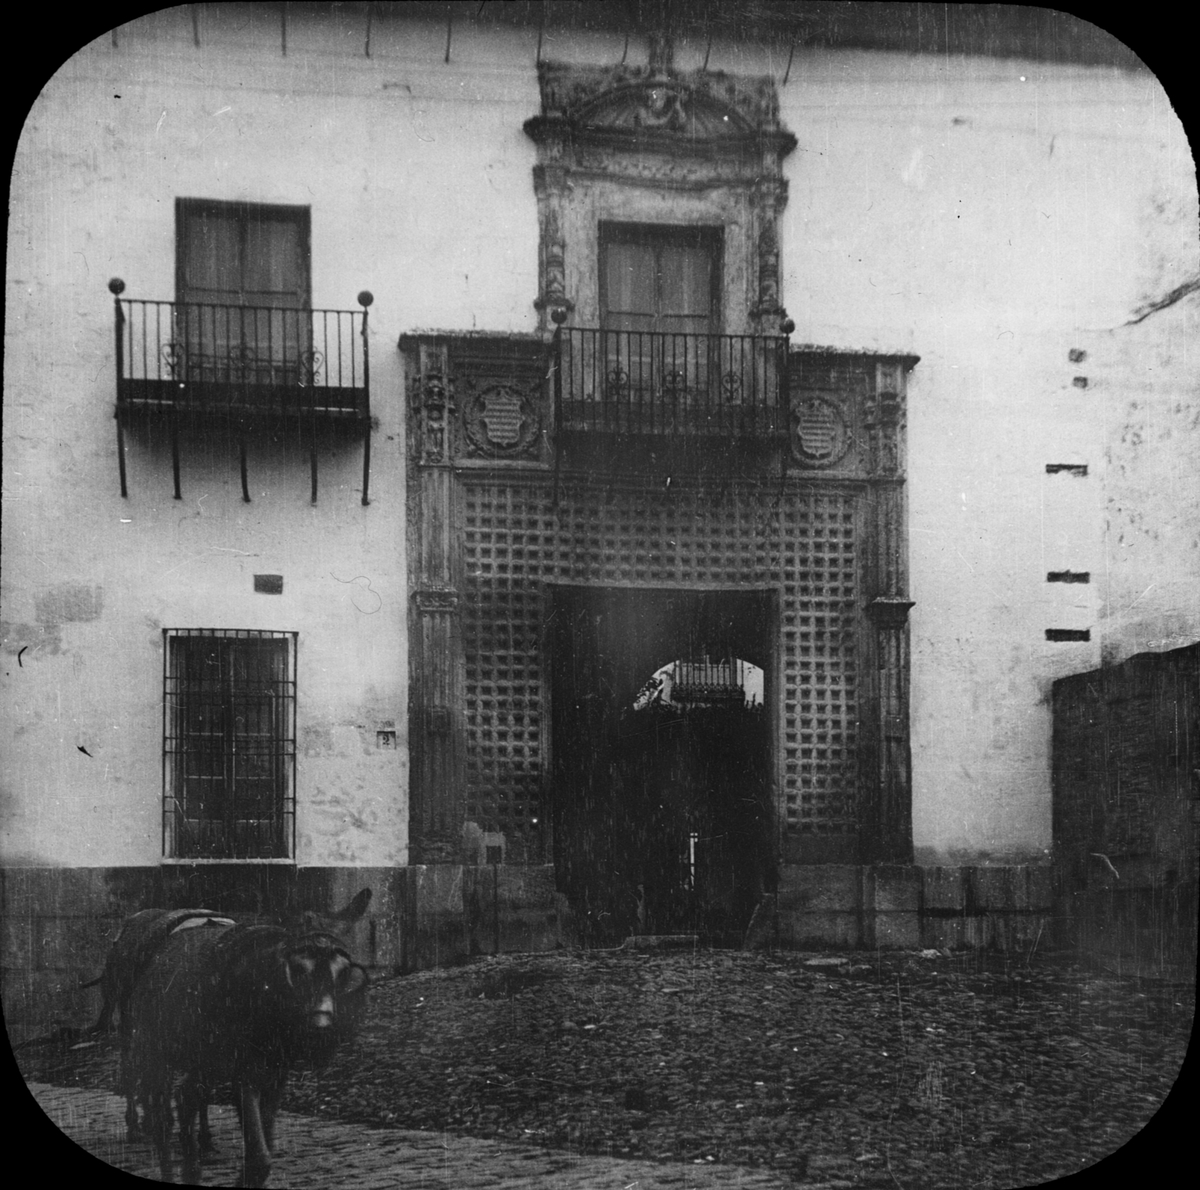 Skioptikonbild med motiv från Córdoba, konservatoriebyggnaden på Calle Ángel de Saavedra.
Bilden har förvarats i kartong märkt: Granada 1910. Granada 9. N:8.